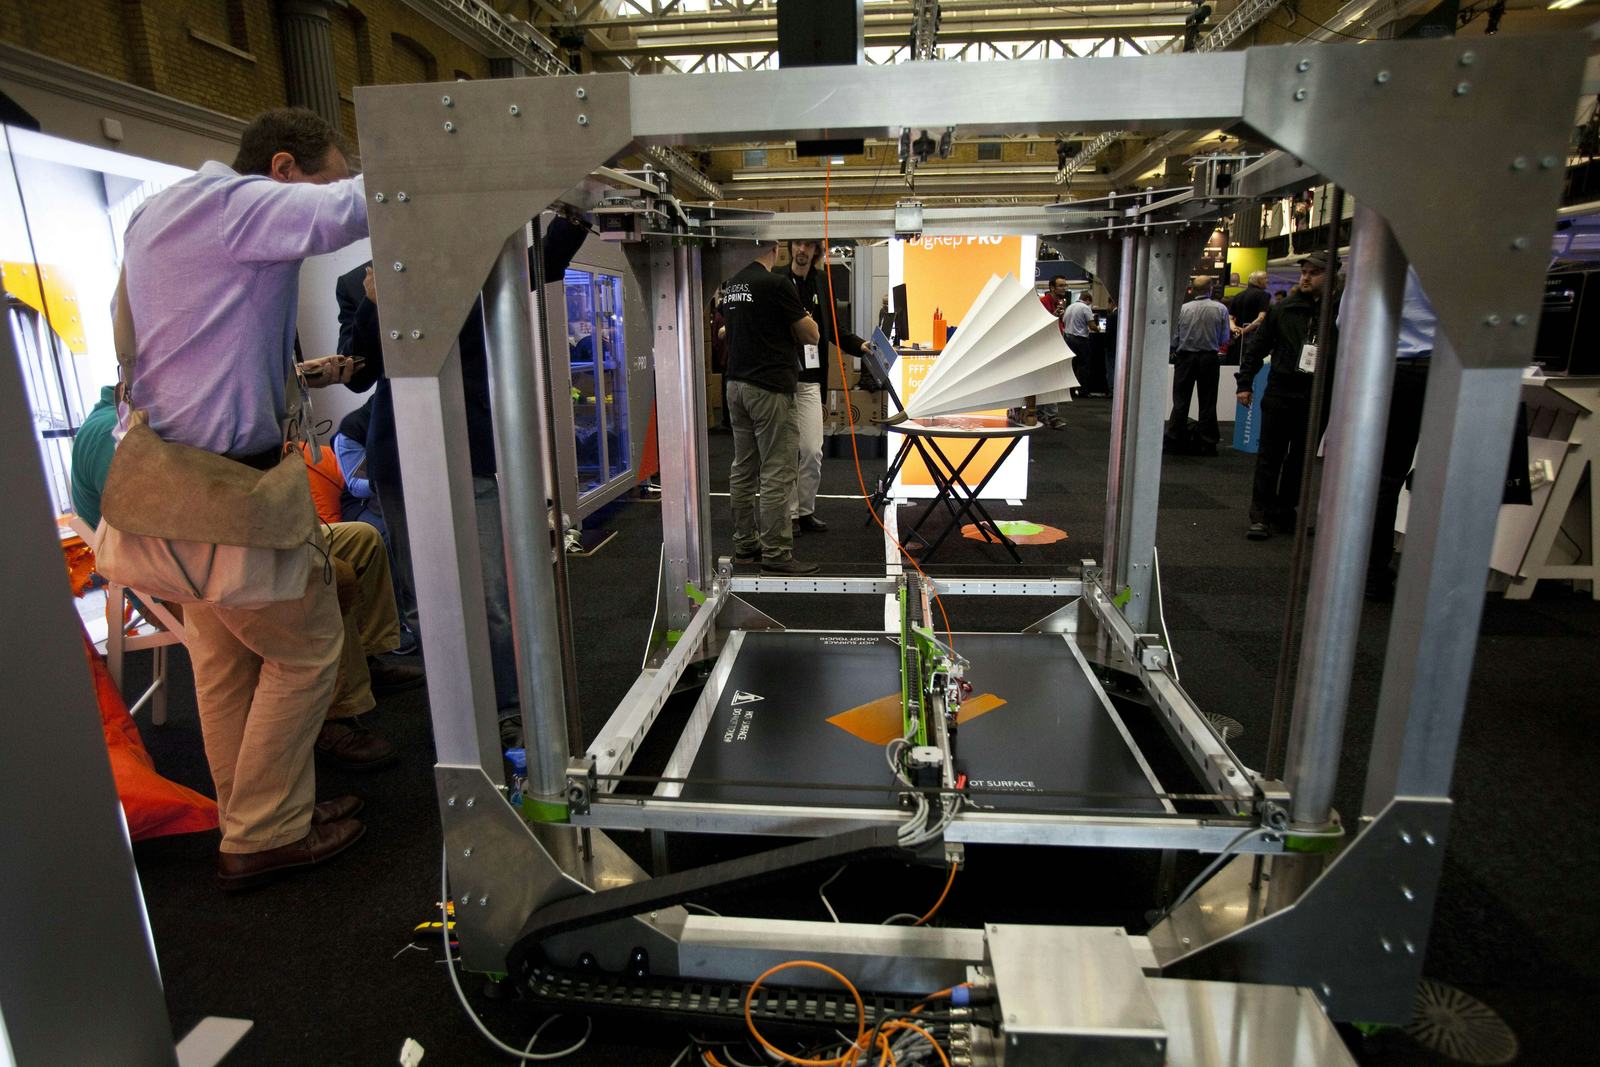 Transportstromen verschuiven door 3D-printing